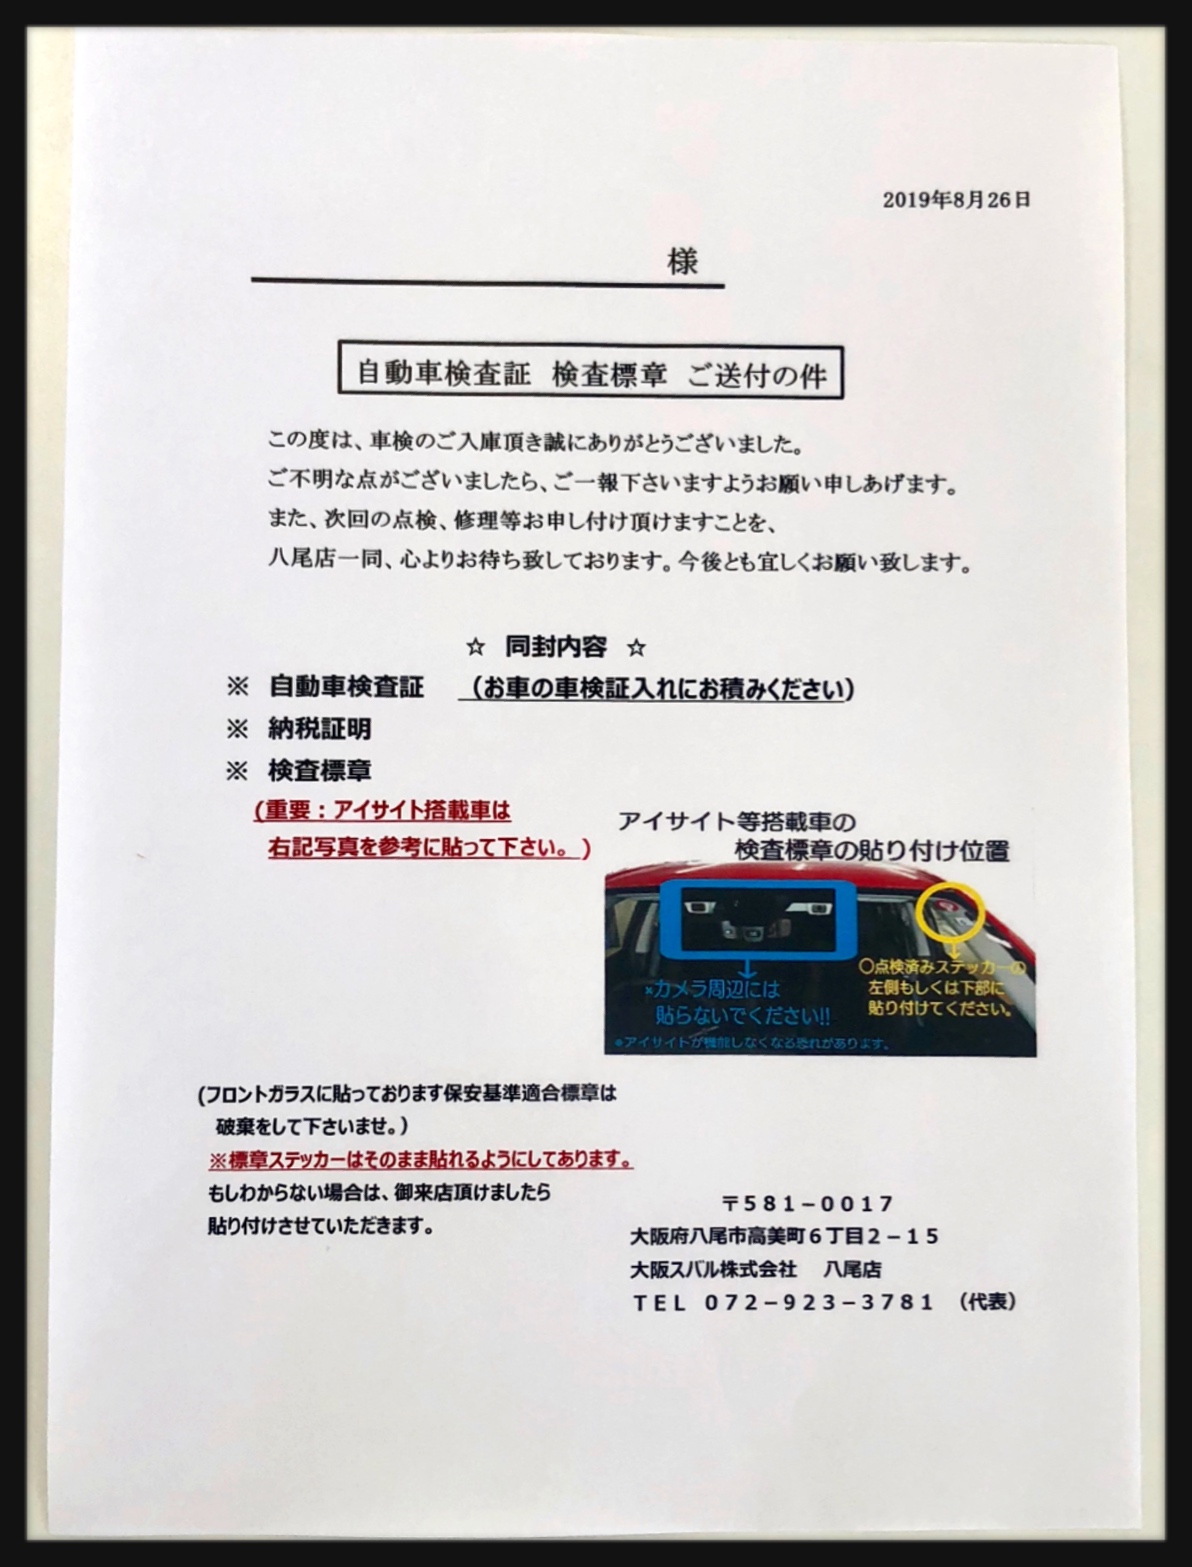 自動車検査証 検査標章の貼り付け位置について 八尾店 スタッフブログ 大阪スバル株式会社